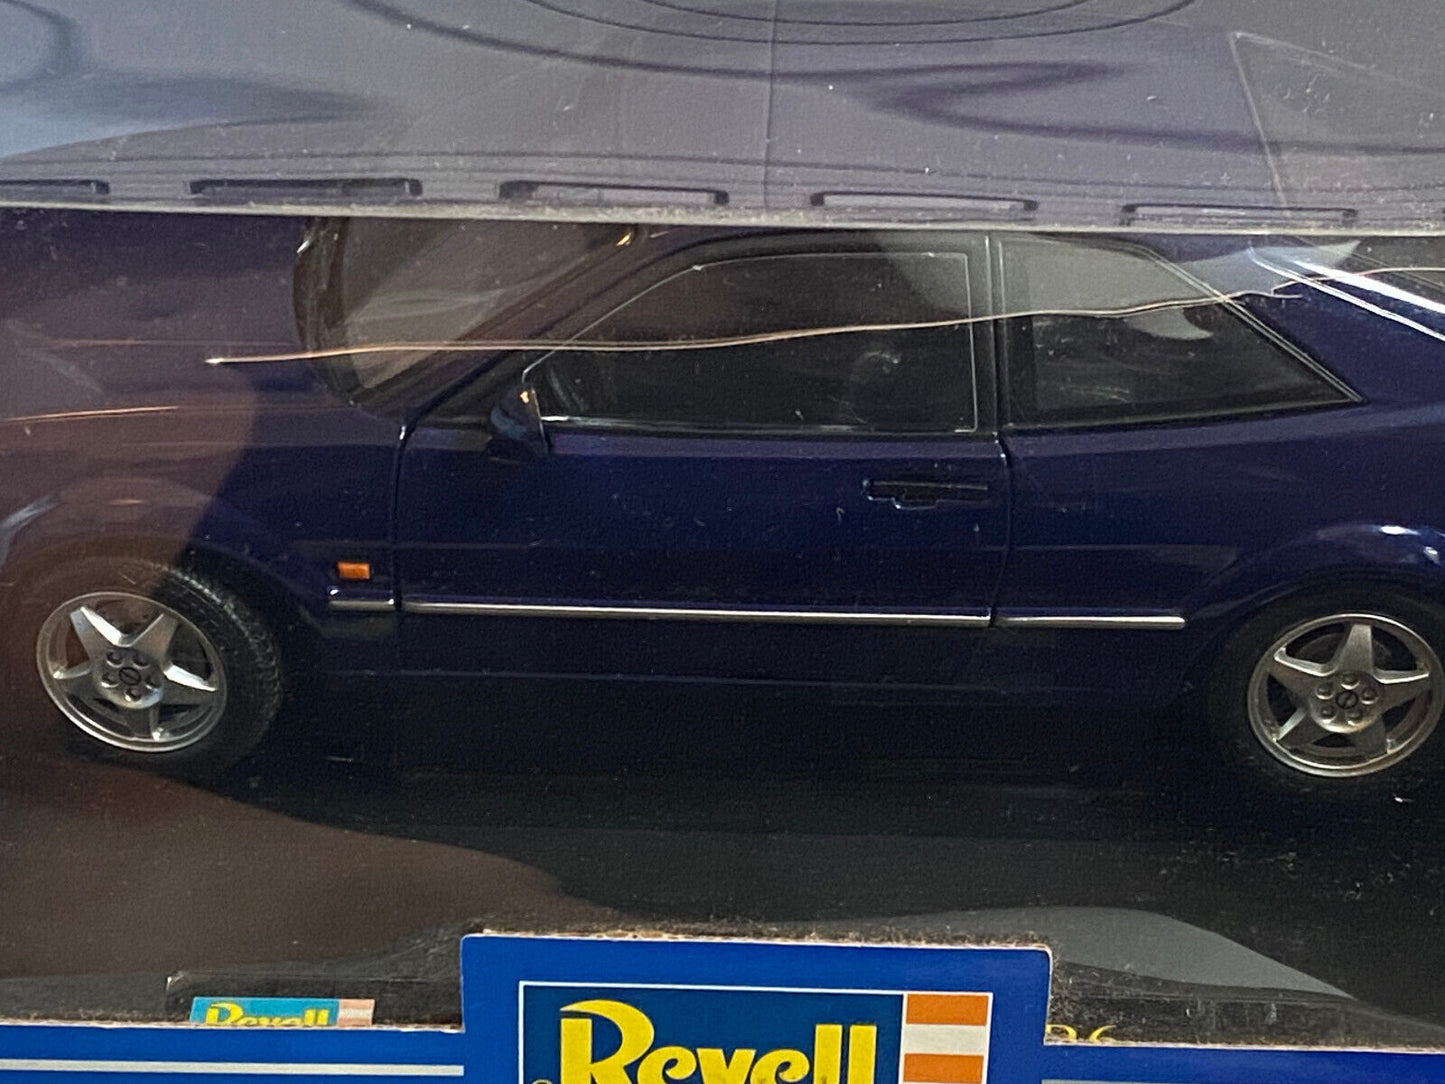 VW Corrado VR6 1995 blau Facelift Revell 08878 Neu in OVP new in box 1:18